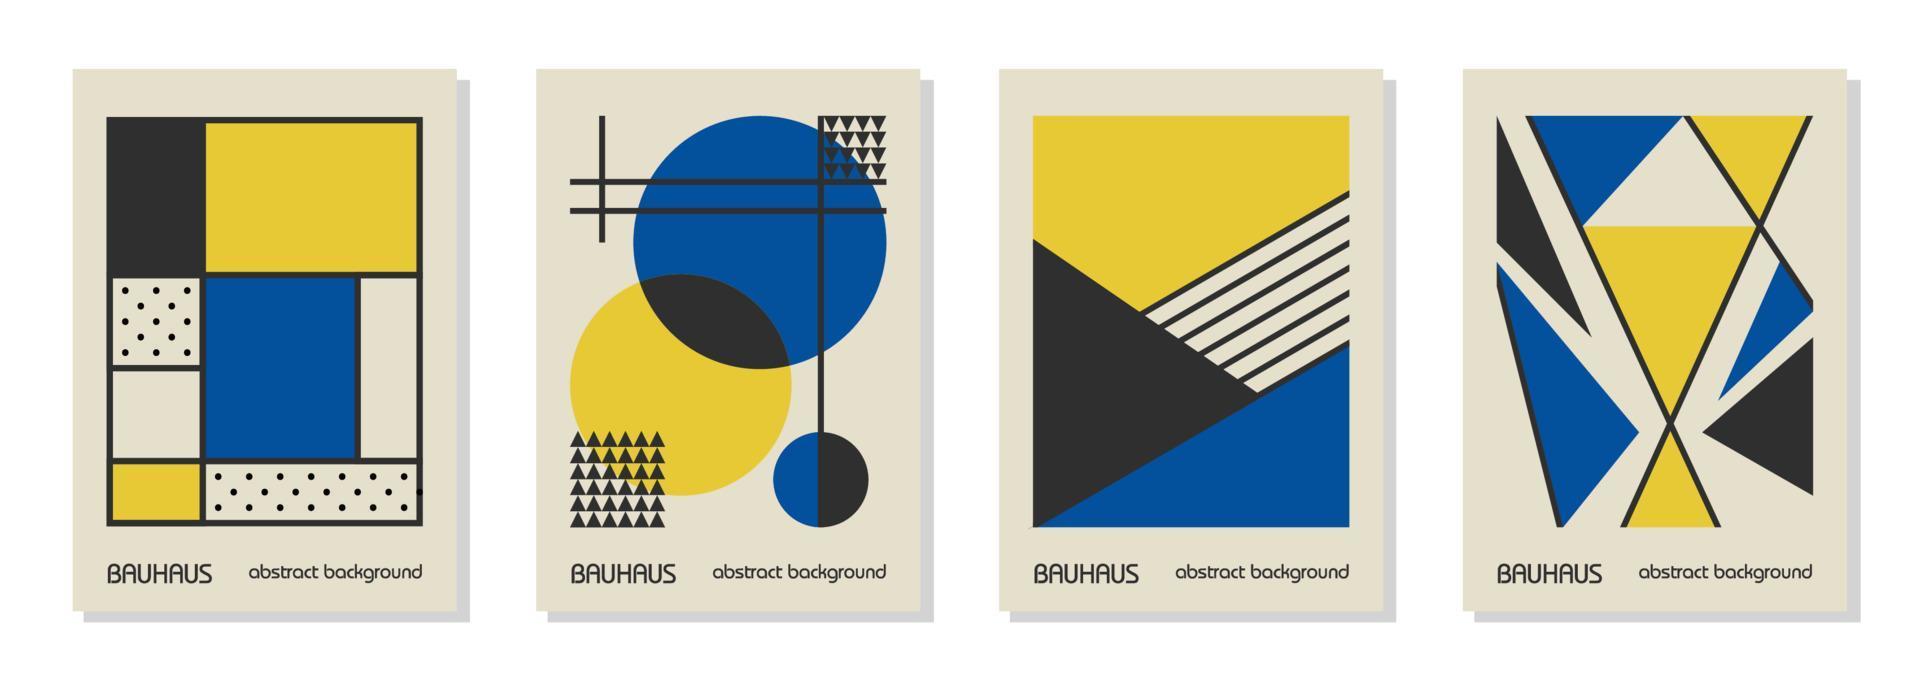 conjunto de 4 afiches de diseño geométrico mínimo de los años 20, arte mural, plantilla, diseño con elementos de formas primitivas. Fondo de vector de patrón retro bauhaus, colores de bandera ucraniana azul, amarillo y negro